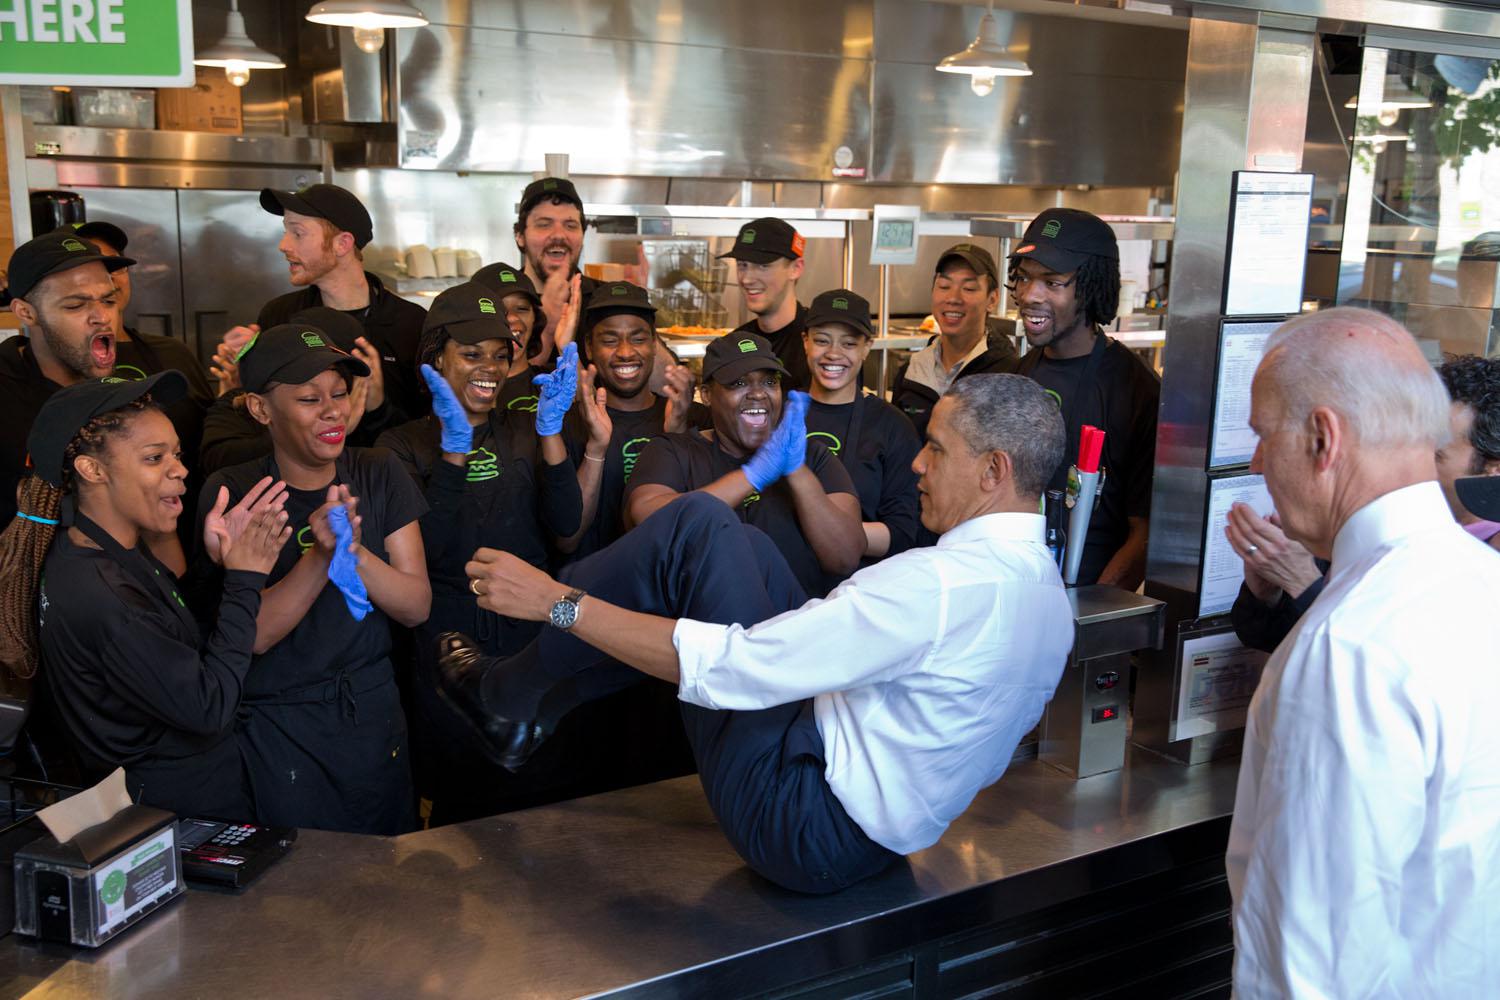 Obama catturato dall'obiettivo mentre salta a sedere sul bancone dello Shake Shack restaurant di Washington per farsi una foto con lo staff il 16 maggio 2014.